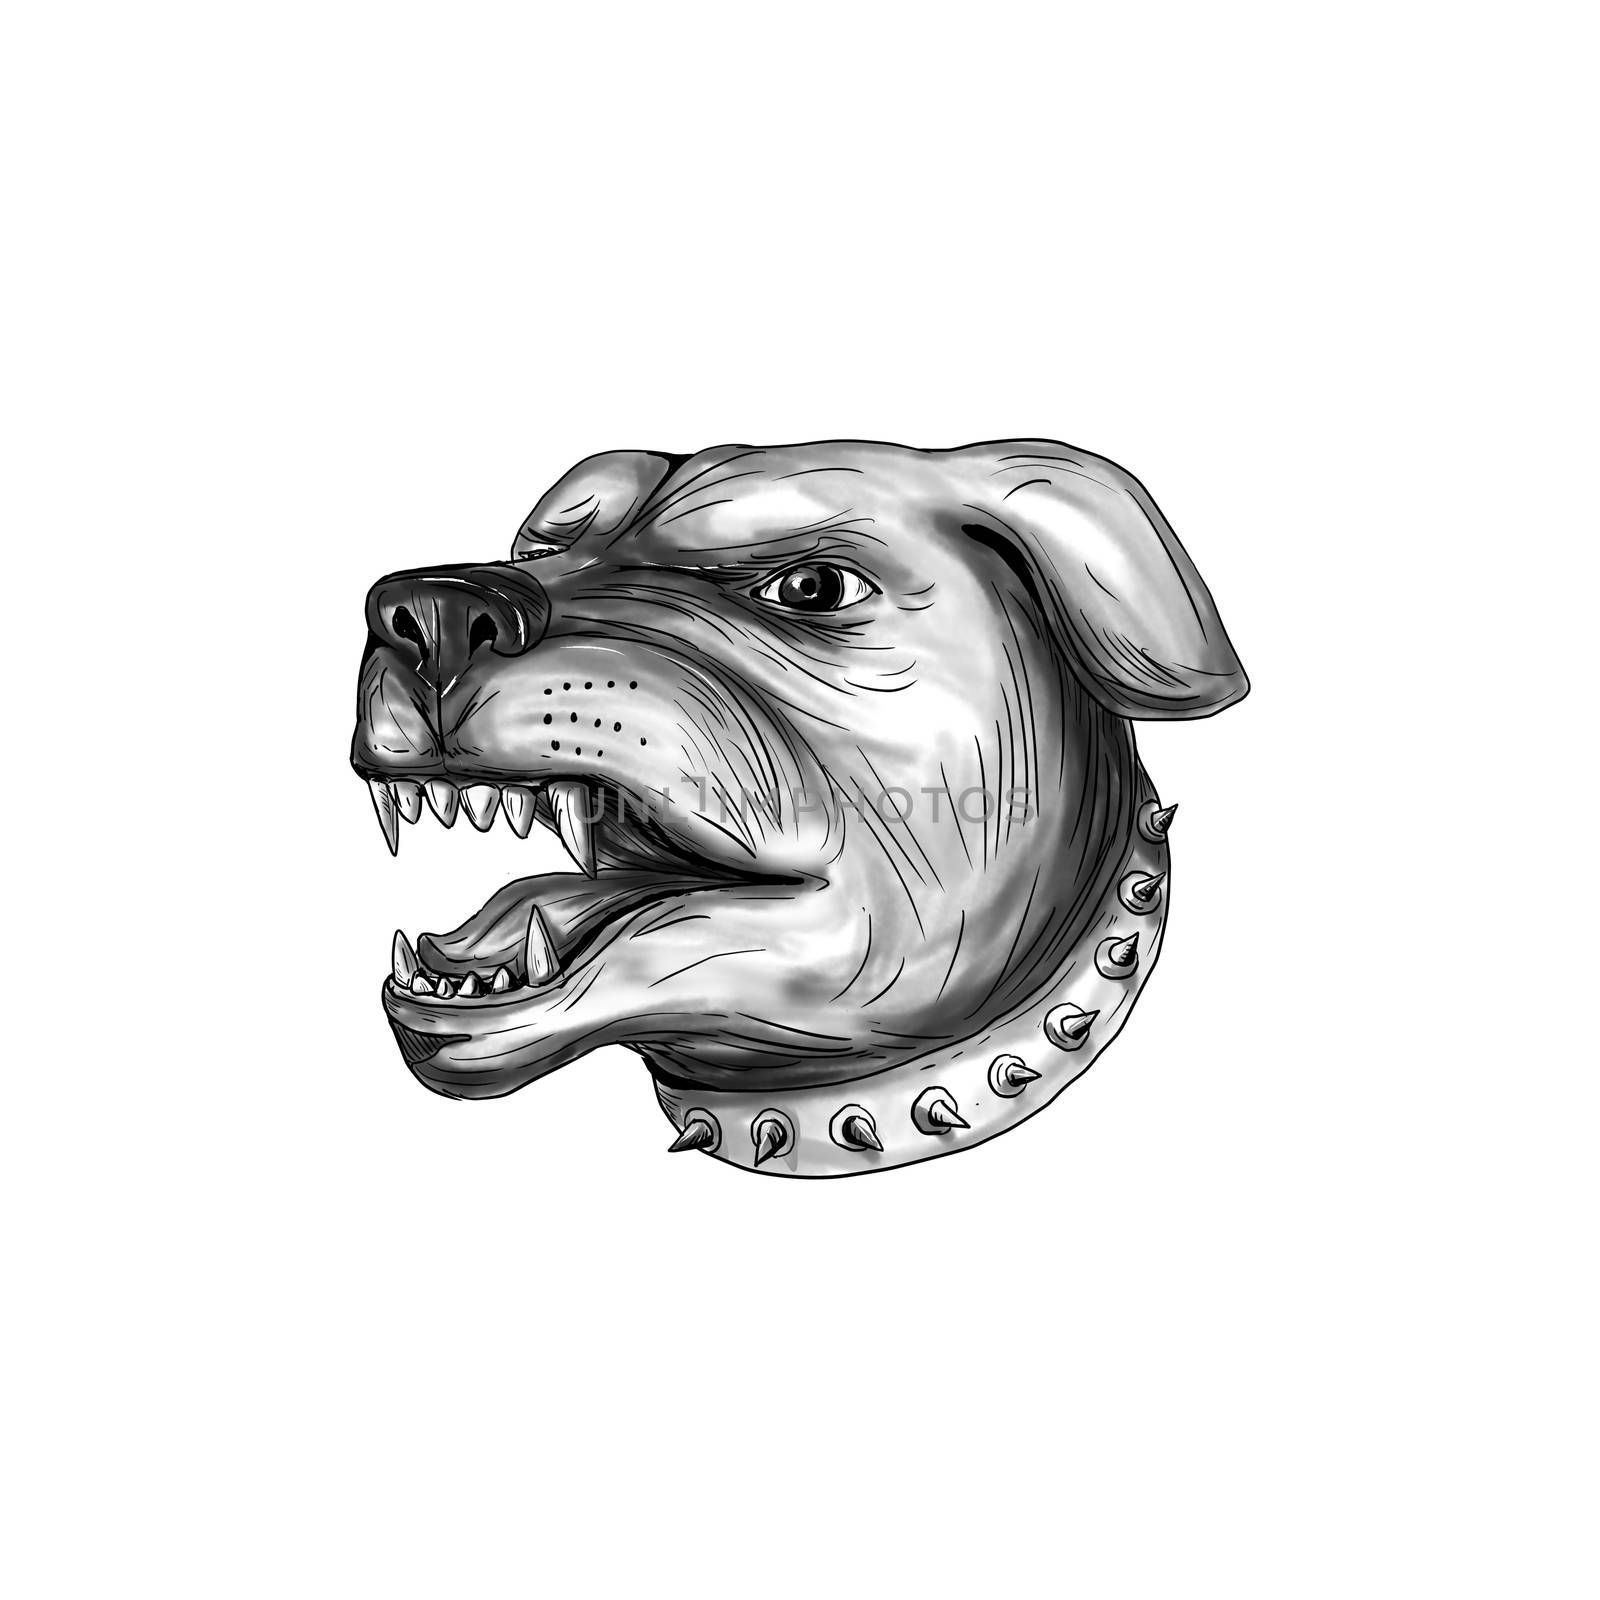 Rottweiler Dog Head Growling Tattoo by patrimonio